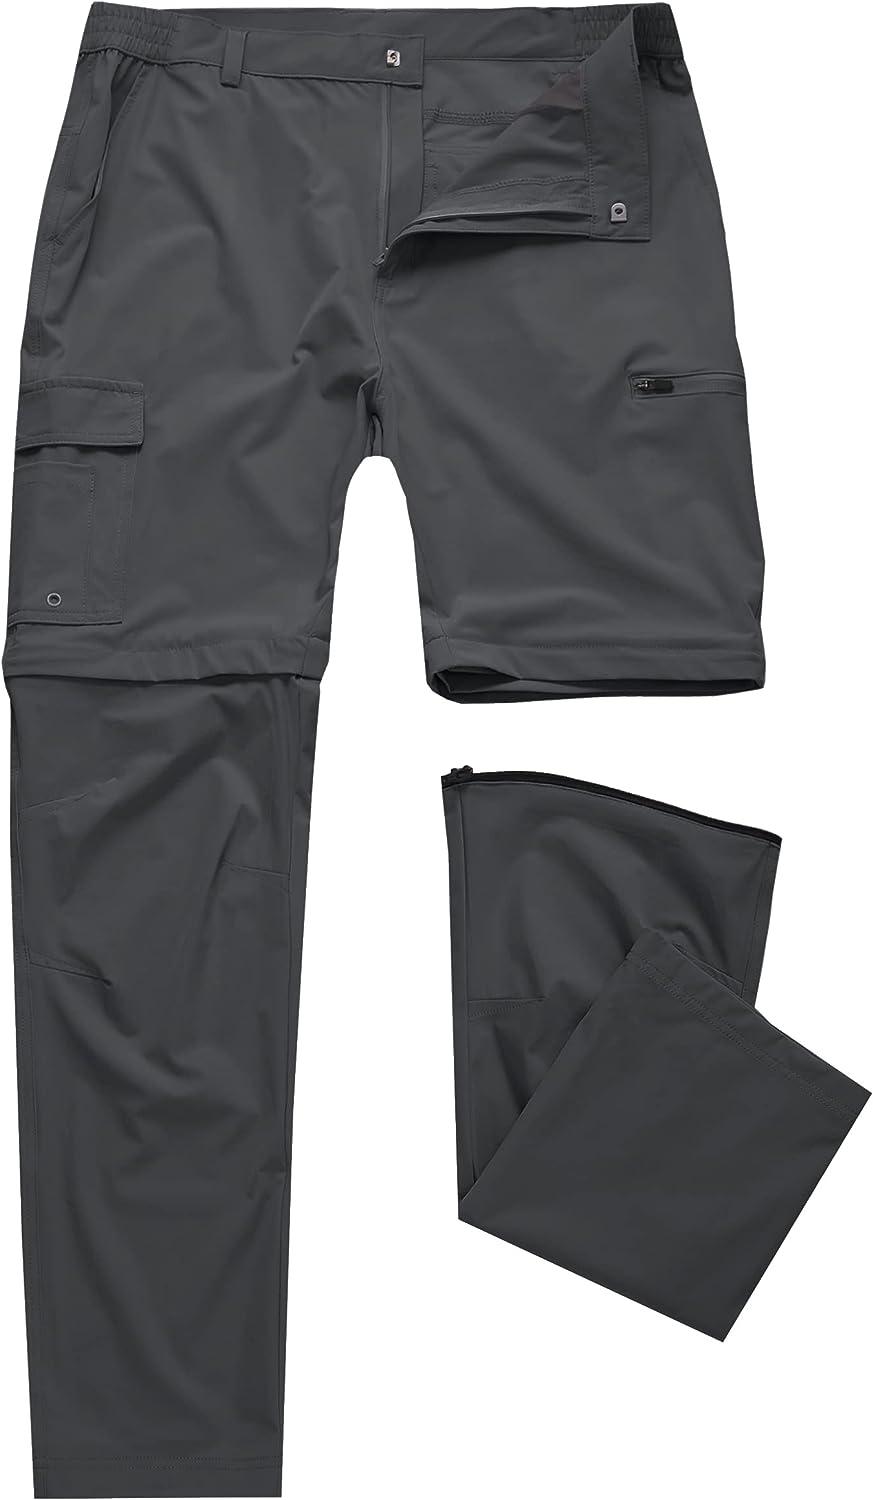  Mens Hiking Convertible Pants Outdoor Waterproof Quick Dry  Zip Off Lightweight Fishing PantsBlack 30X32